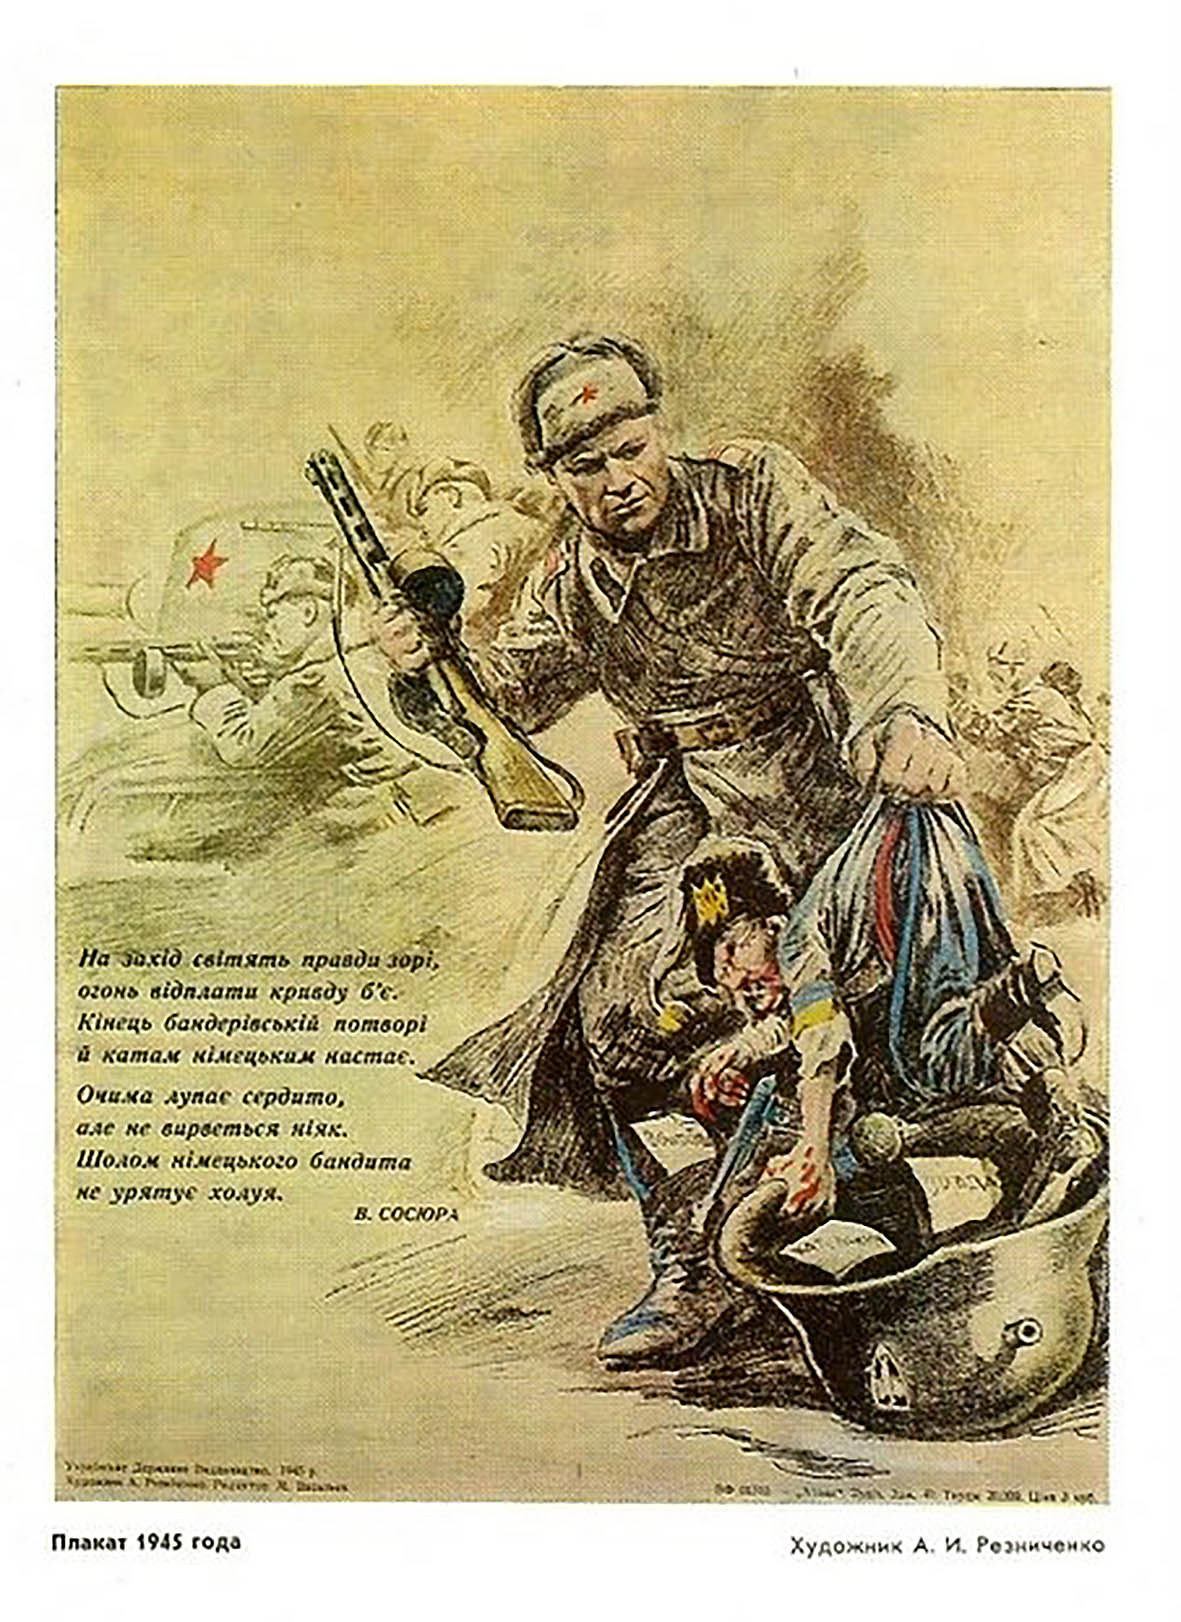 Пьем воду родного днепра будем пить. Плакаты против бандеровцев. Советские карикатуры на бандеровцев. Советские плакаты против бандеровцев.